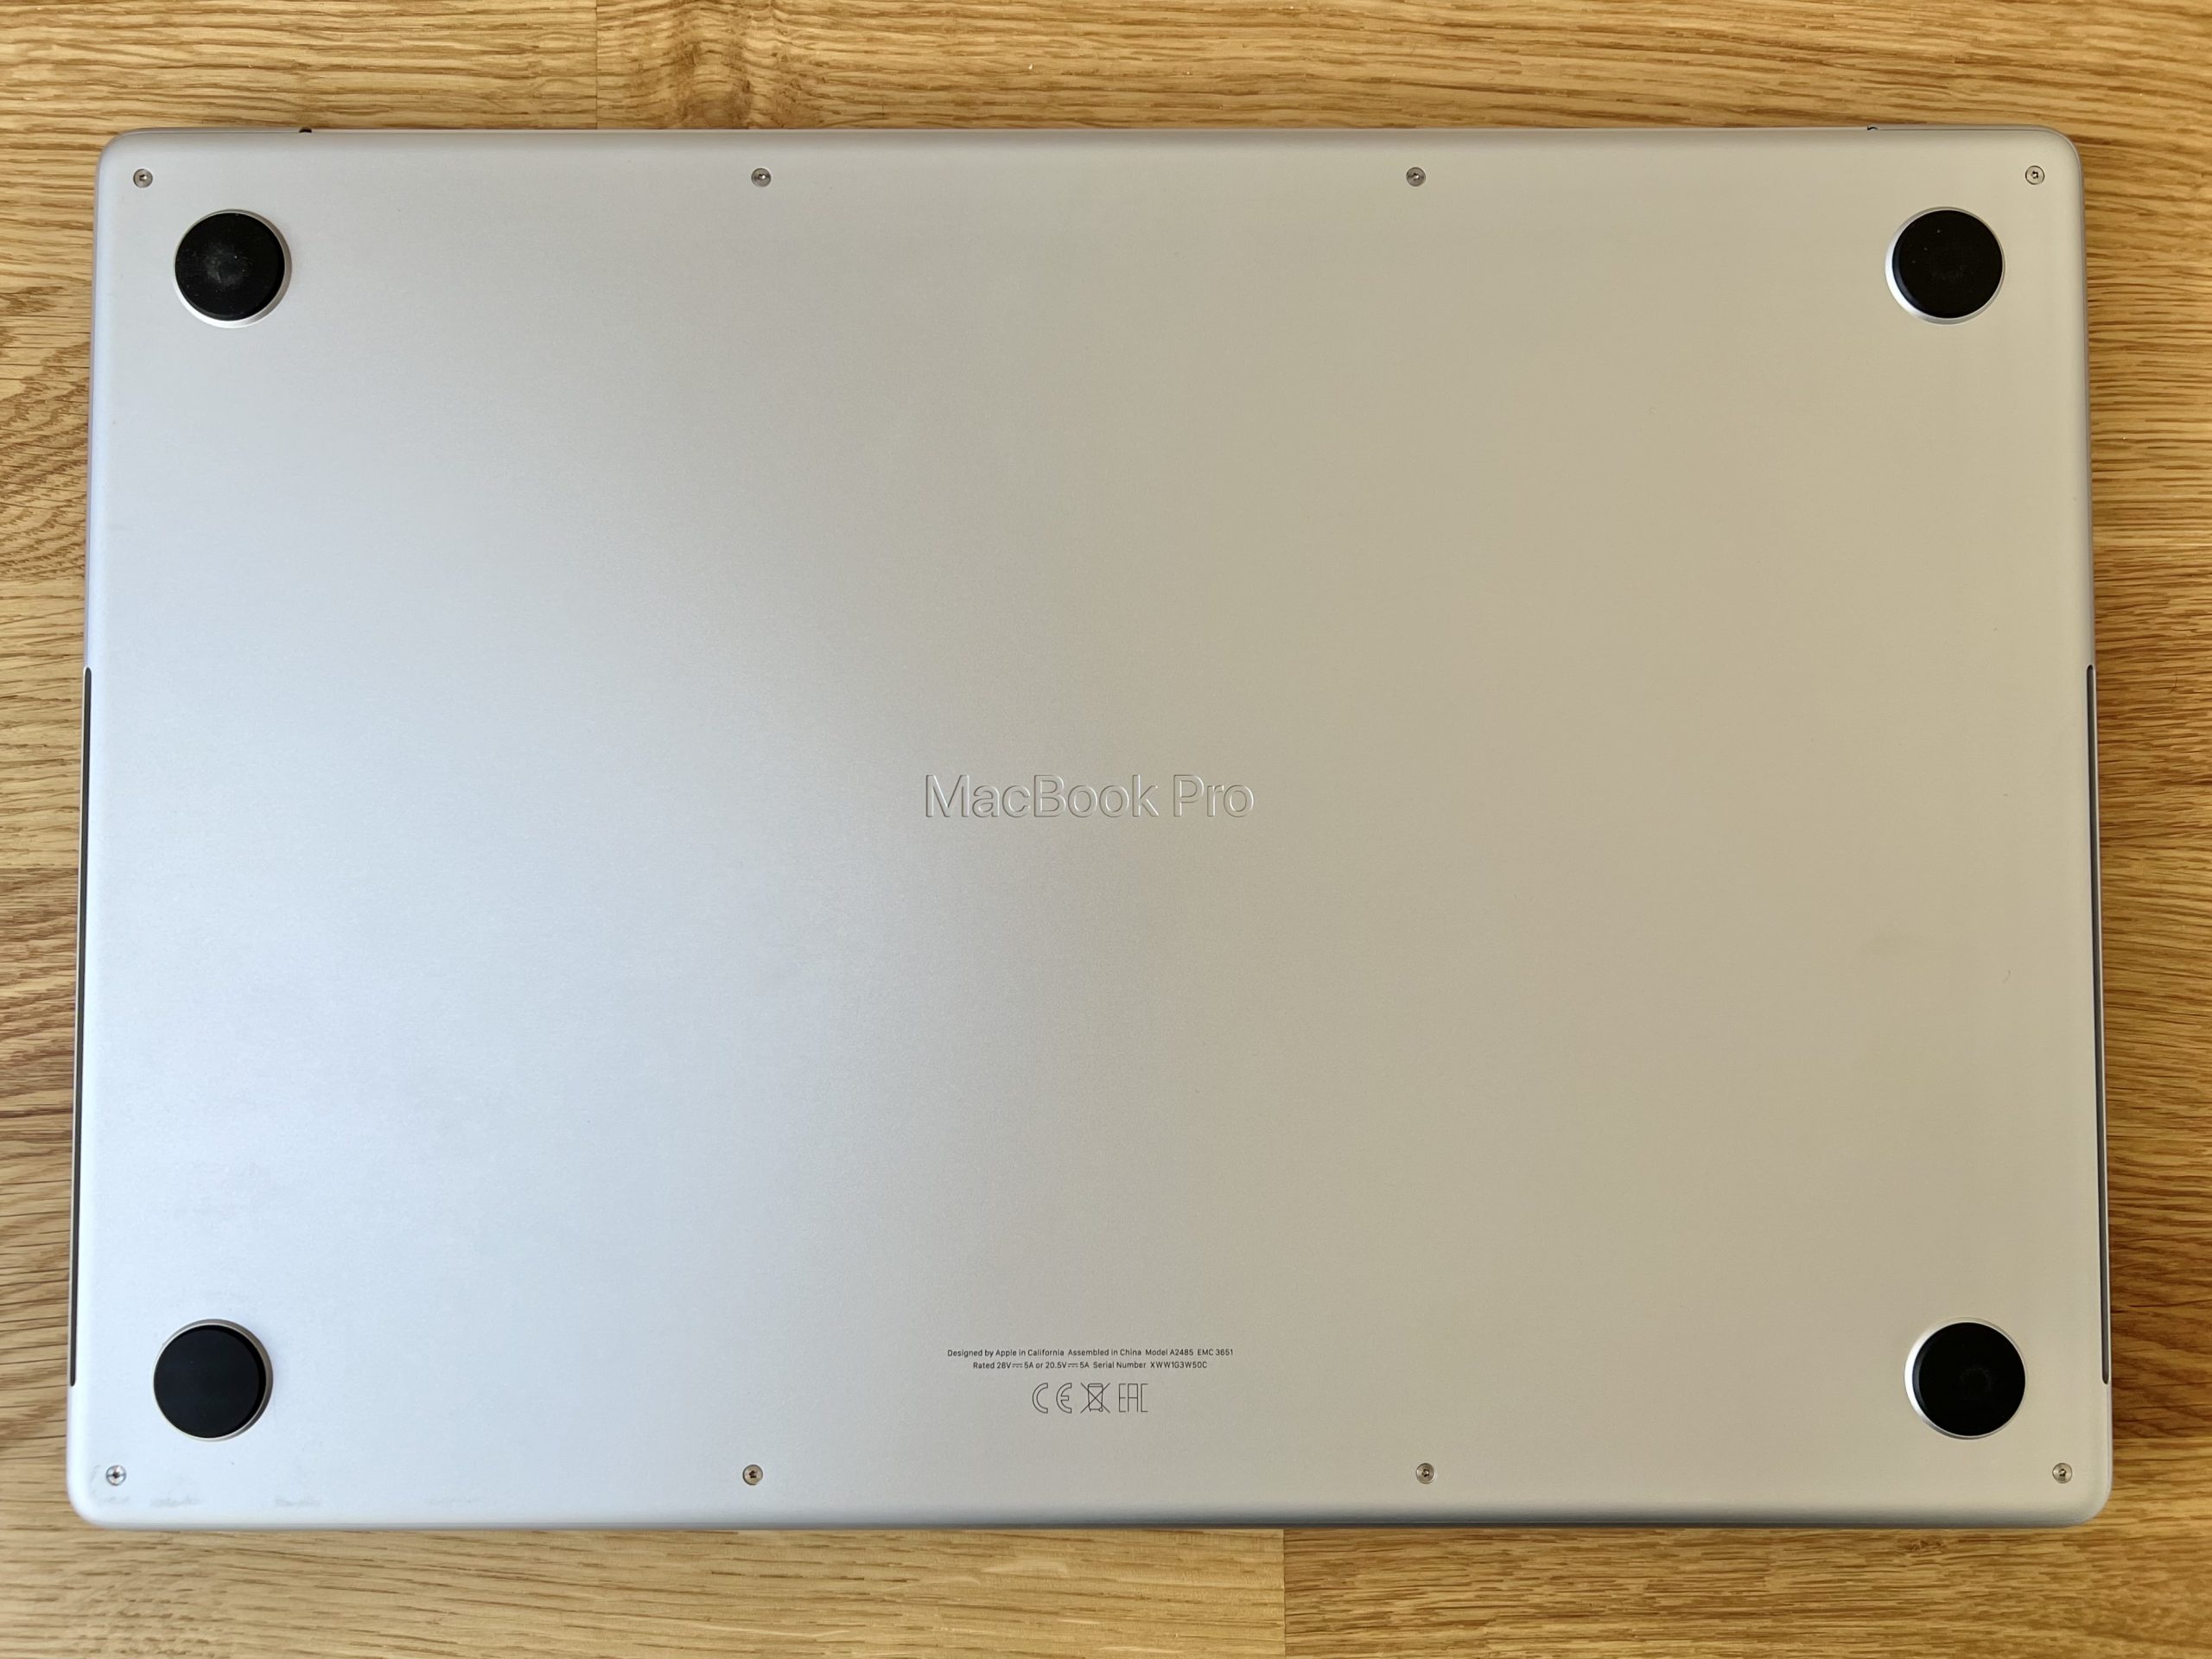 MacBook Pro 16’’ M1 Max 1To / 32Go